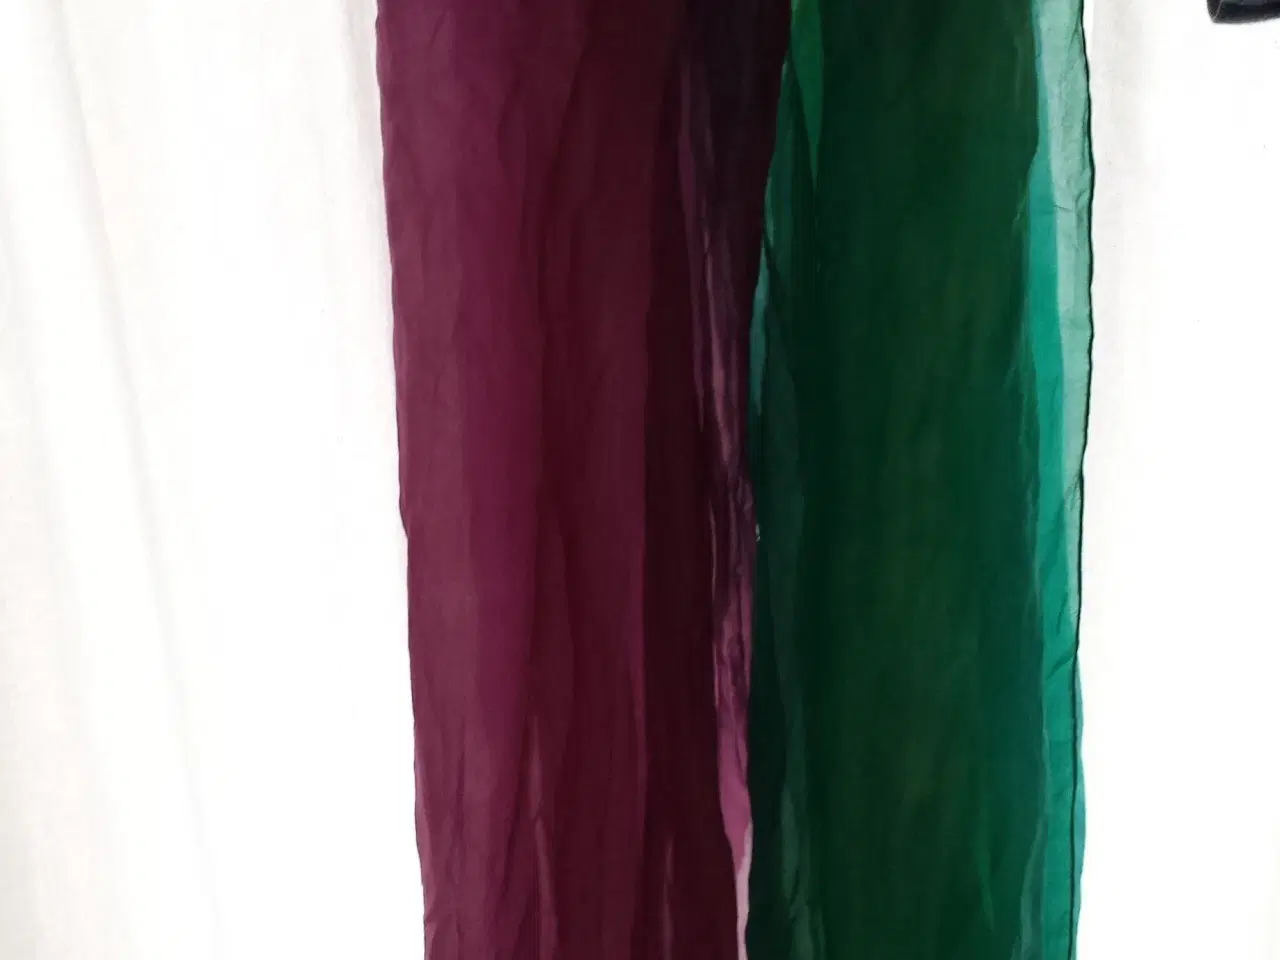 Billede 2 - Ensfarvede silketørklæder